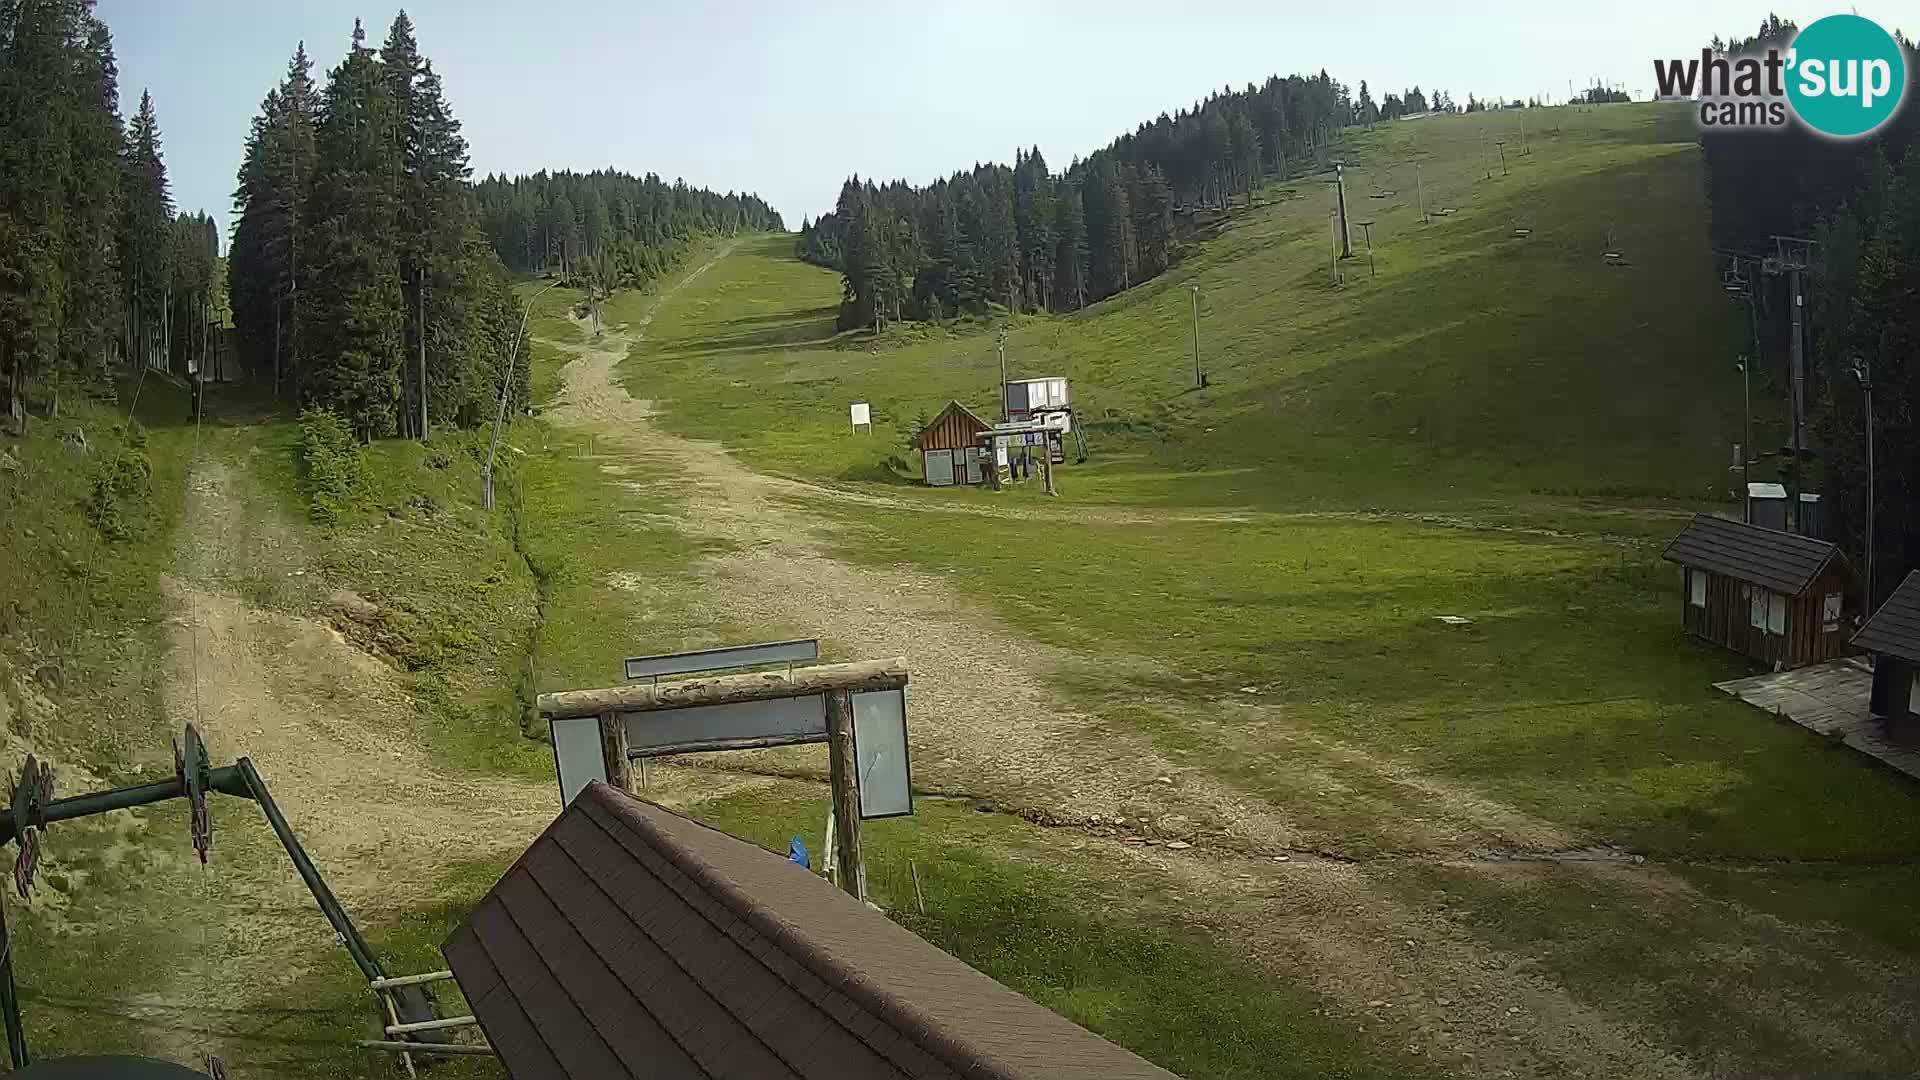 Rogla ski resort – Planja, Košuta, Jasa